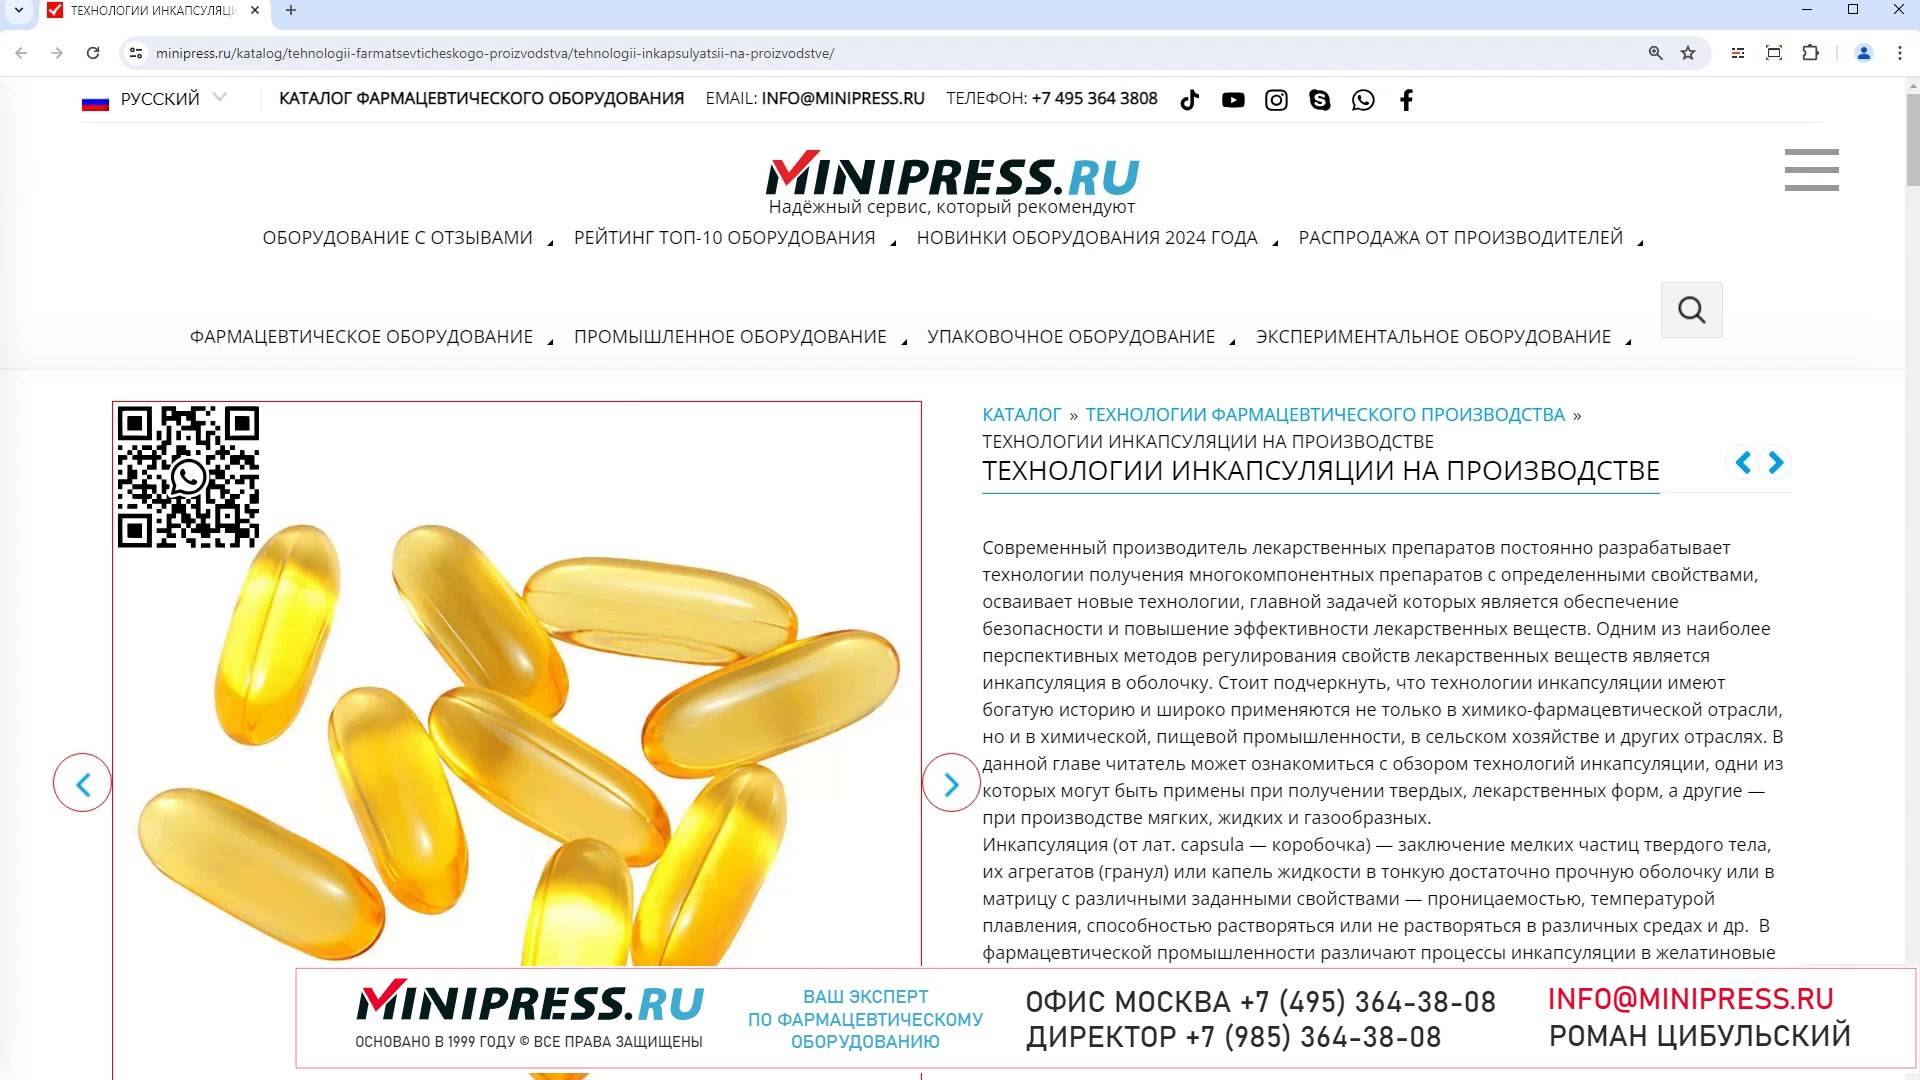 Minipress.ru Технологии инкапсуляции на производстве